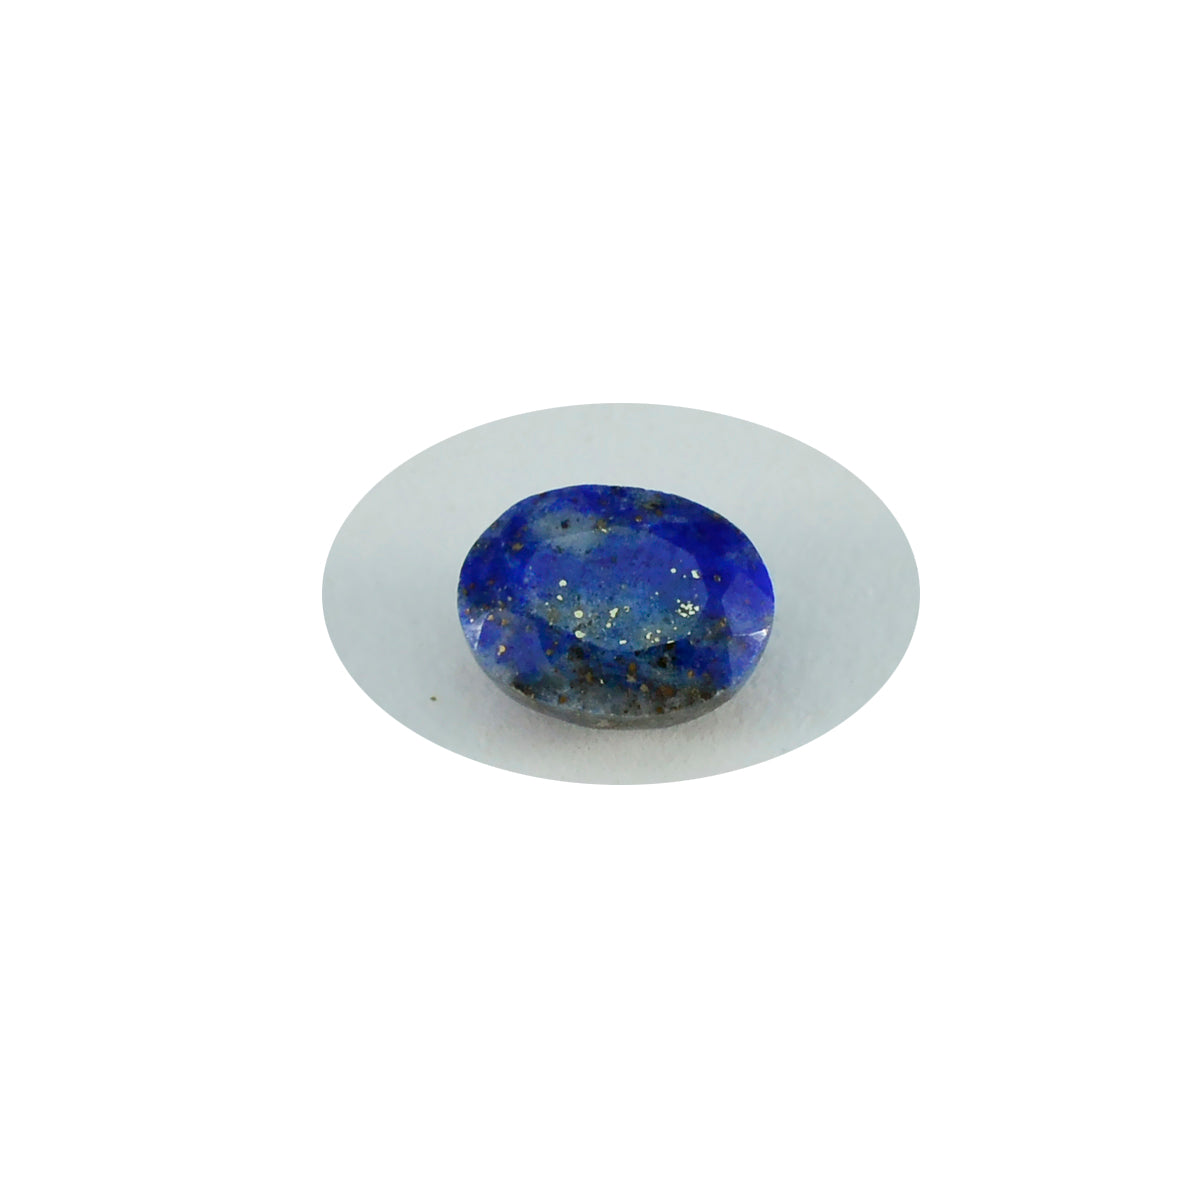 Riyogems 1PC Echte Blauwe Lapis Lazuli Facet 3x5 mm Ovale Vorm aantrekkelijke Kwaliteit Losse Edelsteen